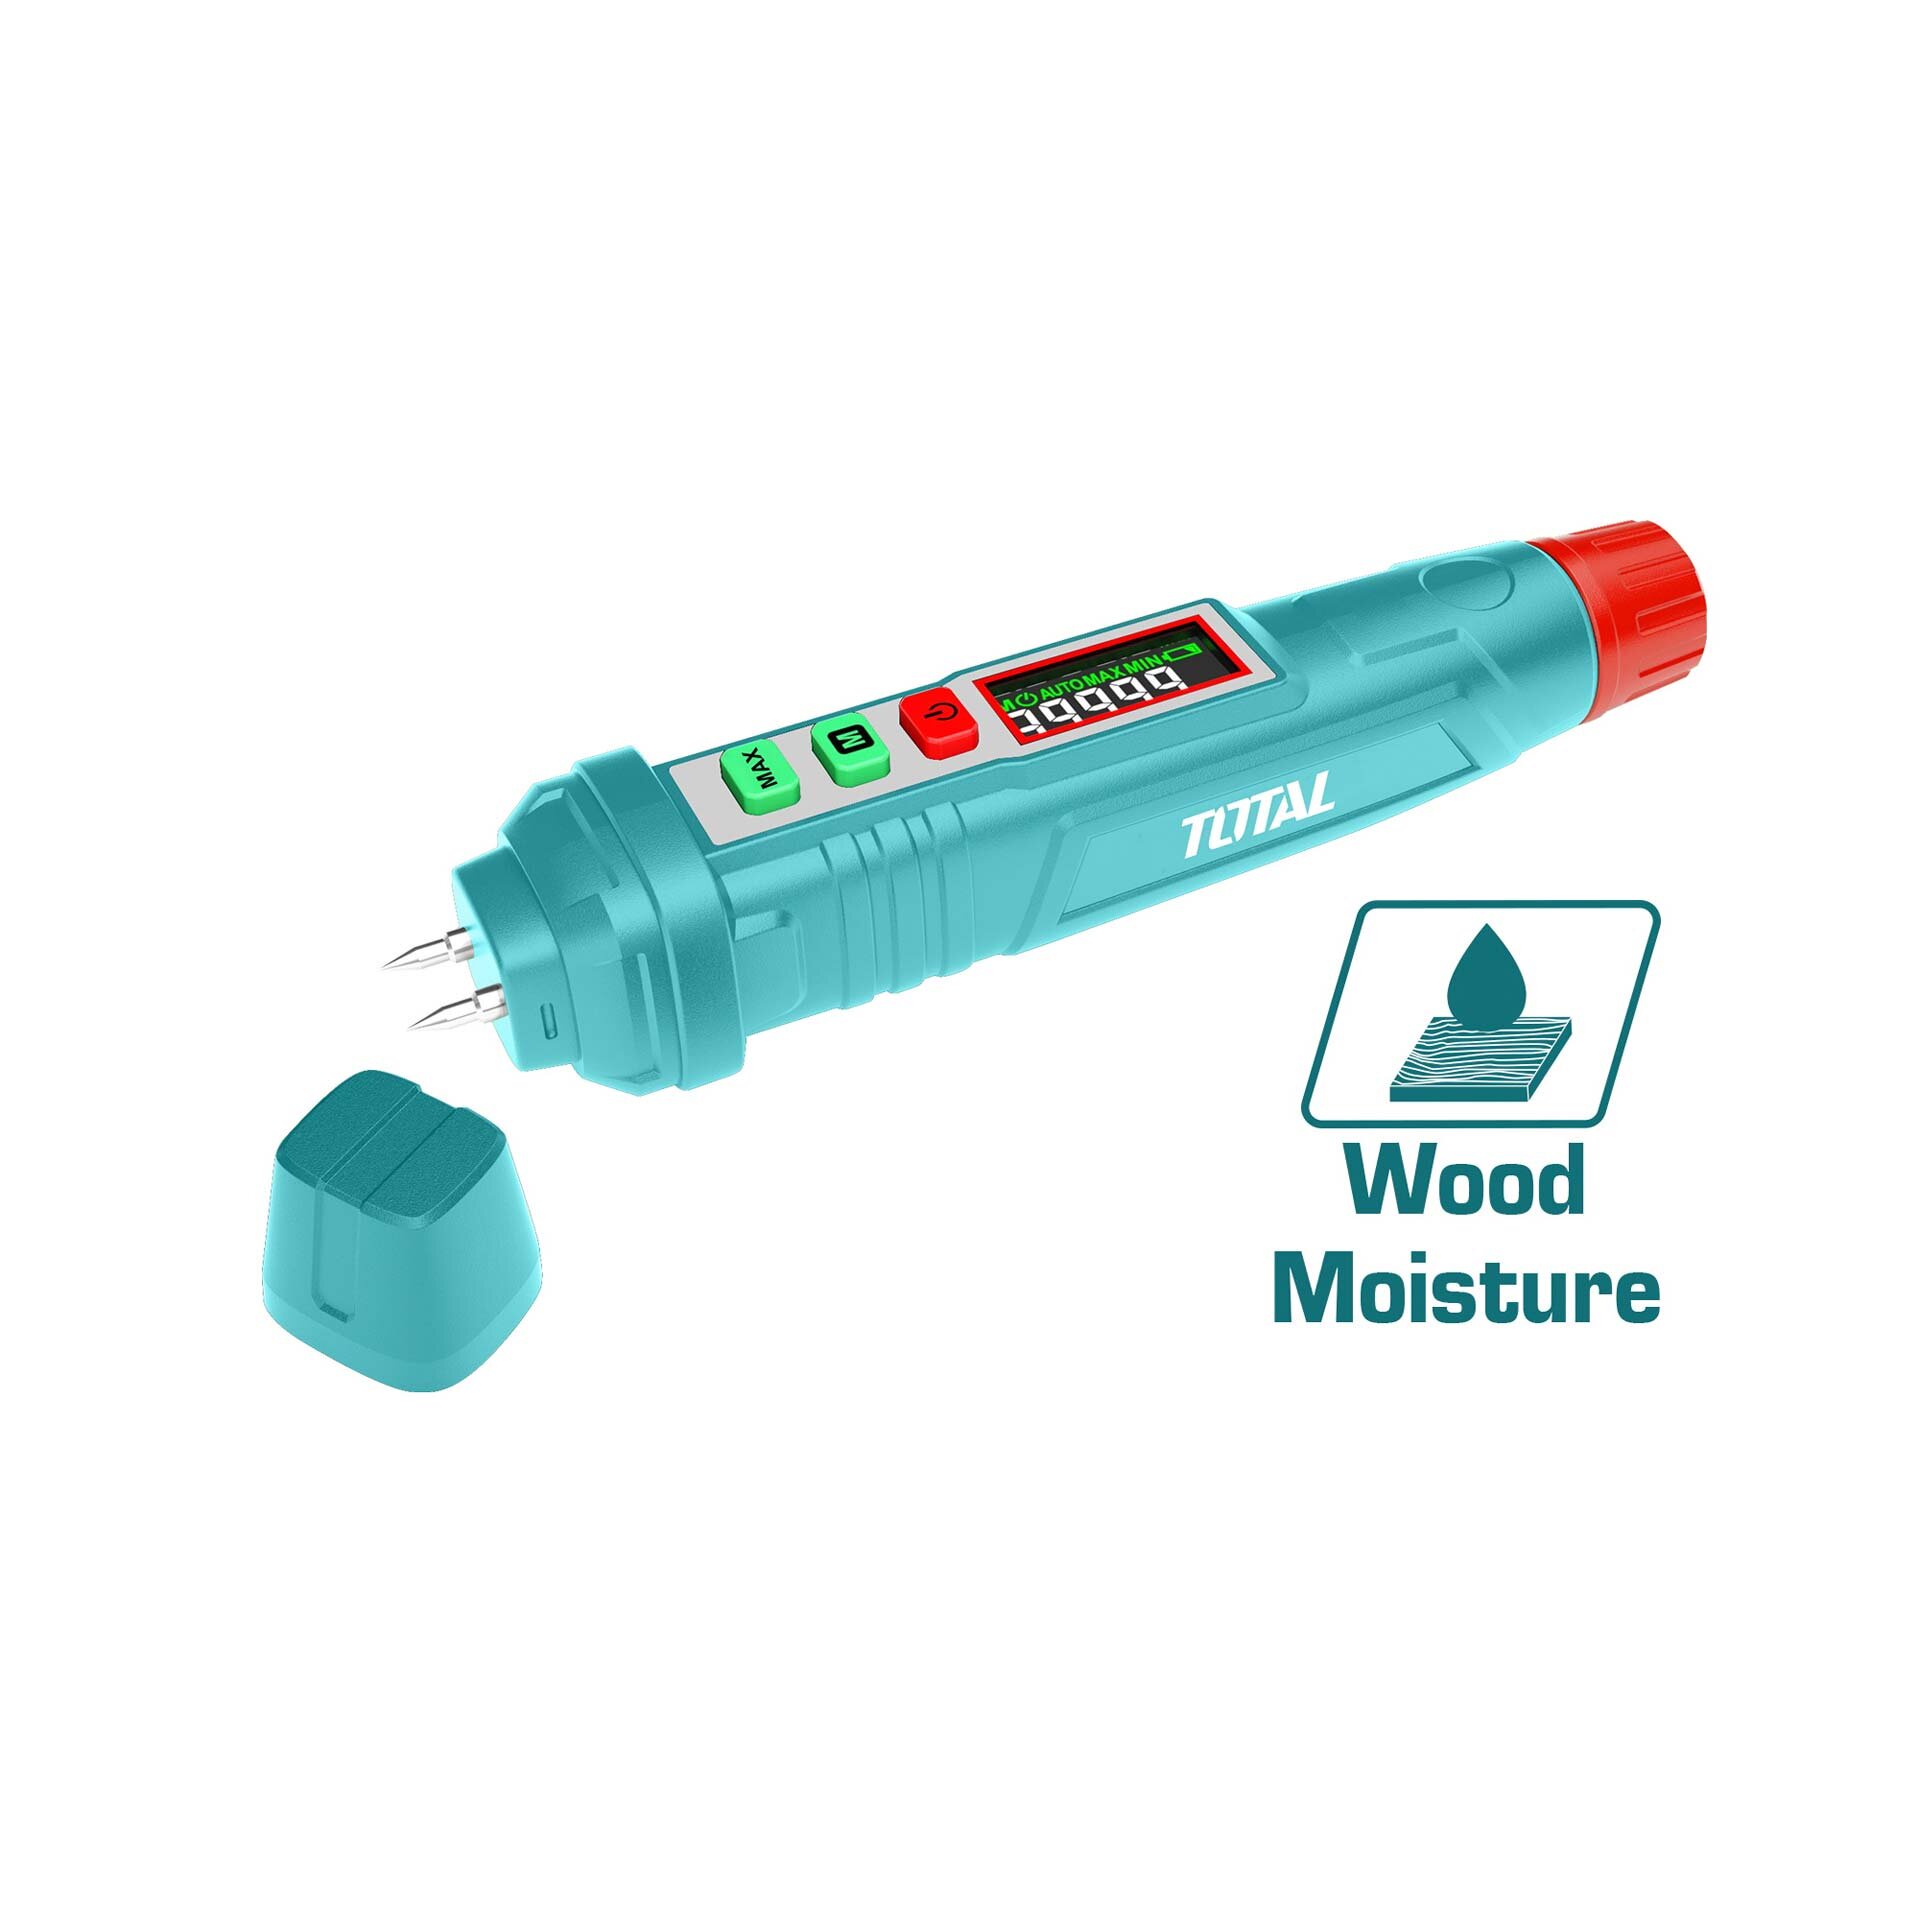 TOTAL Wood moisture meter (TETWM23)